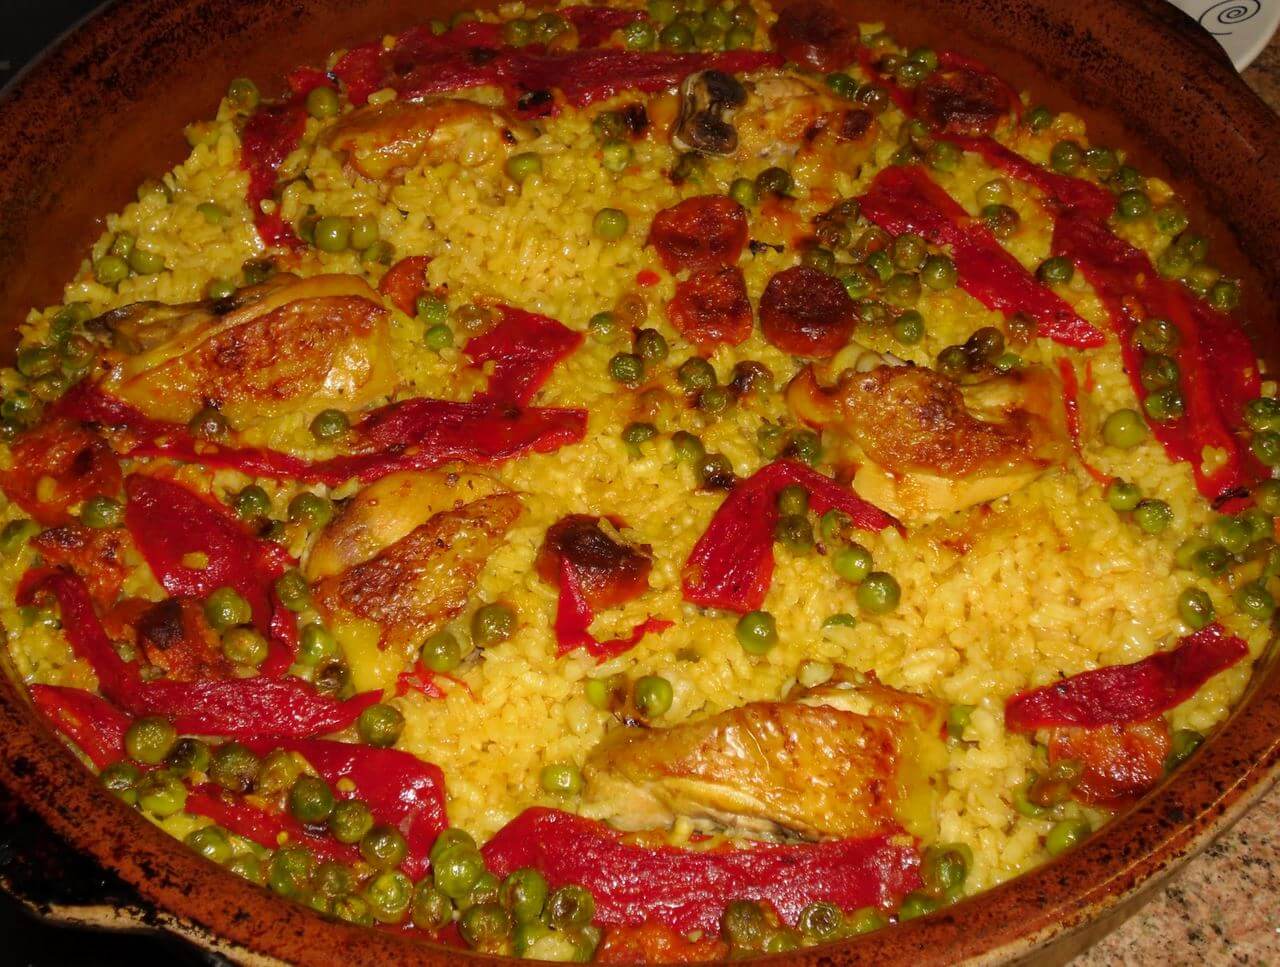 популярное традиционное валенсийское блюдо из риса - это “Запечённый Рис” (Arroz al horno - аррос аль орно)